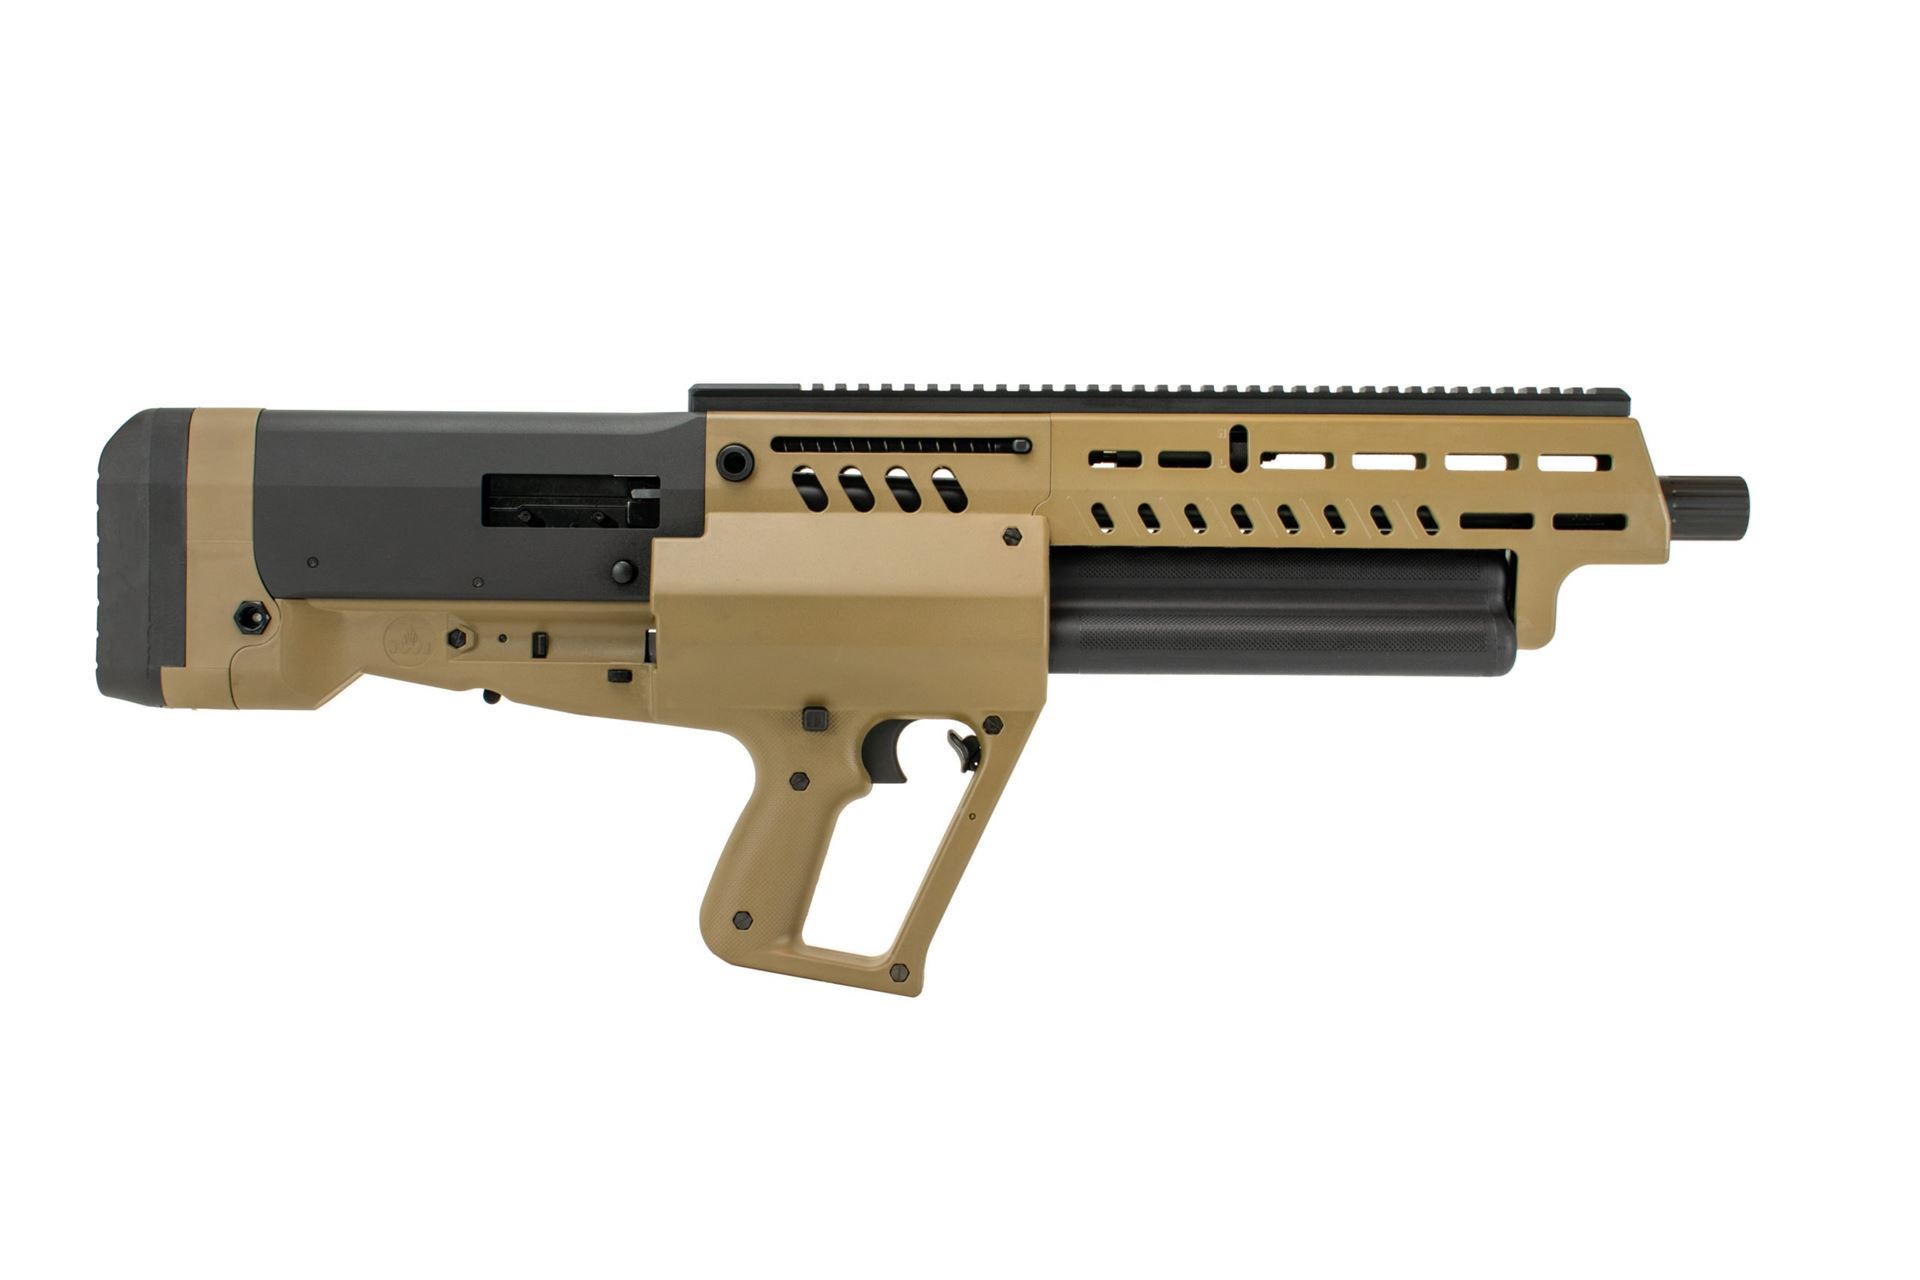 iwi-tavor-ts12-bullpup-shotgun-12ga-18-5-barrel-3-15rd-tube-feed